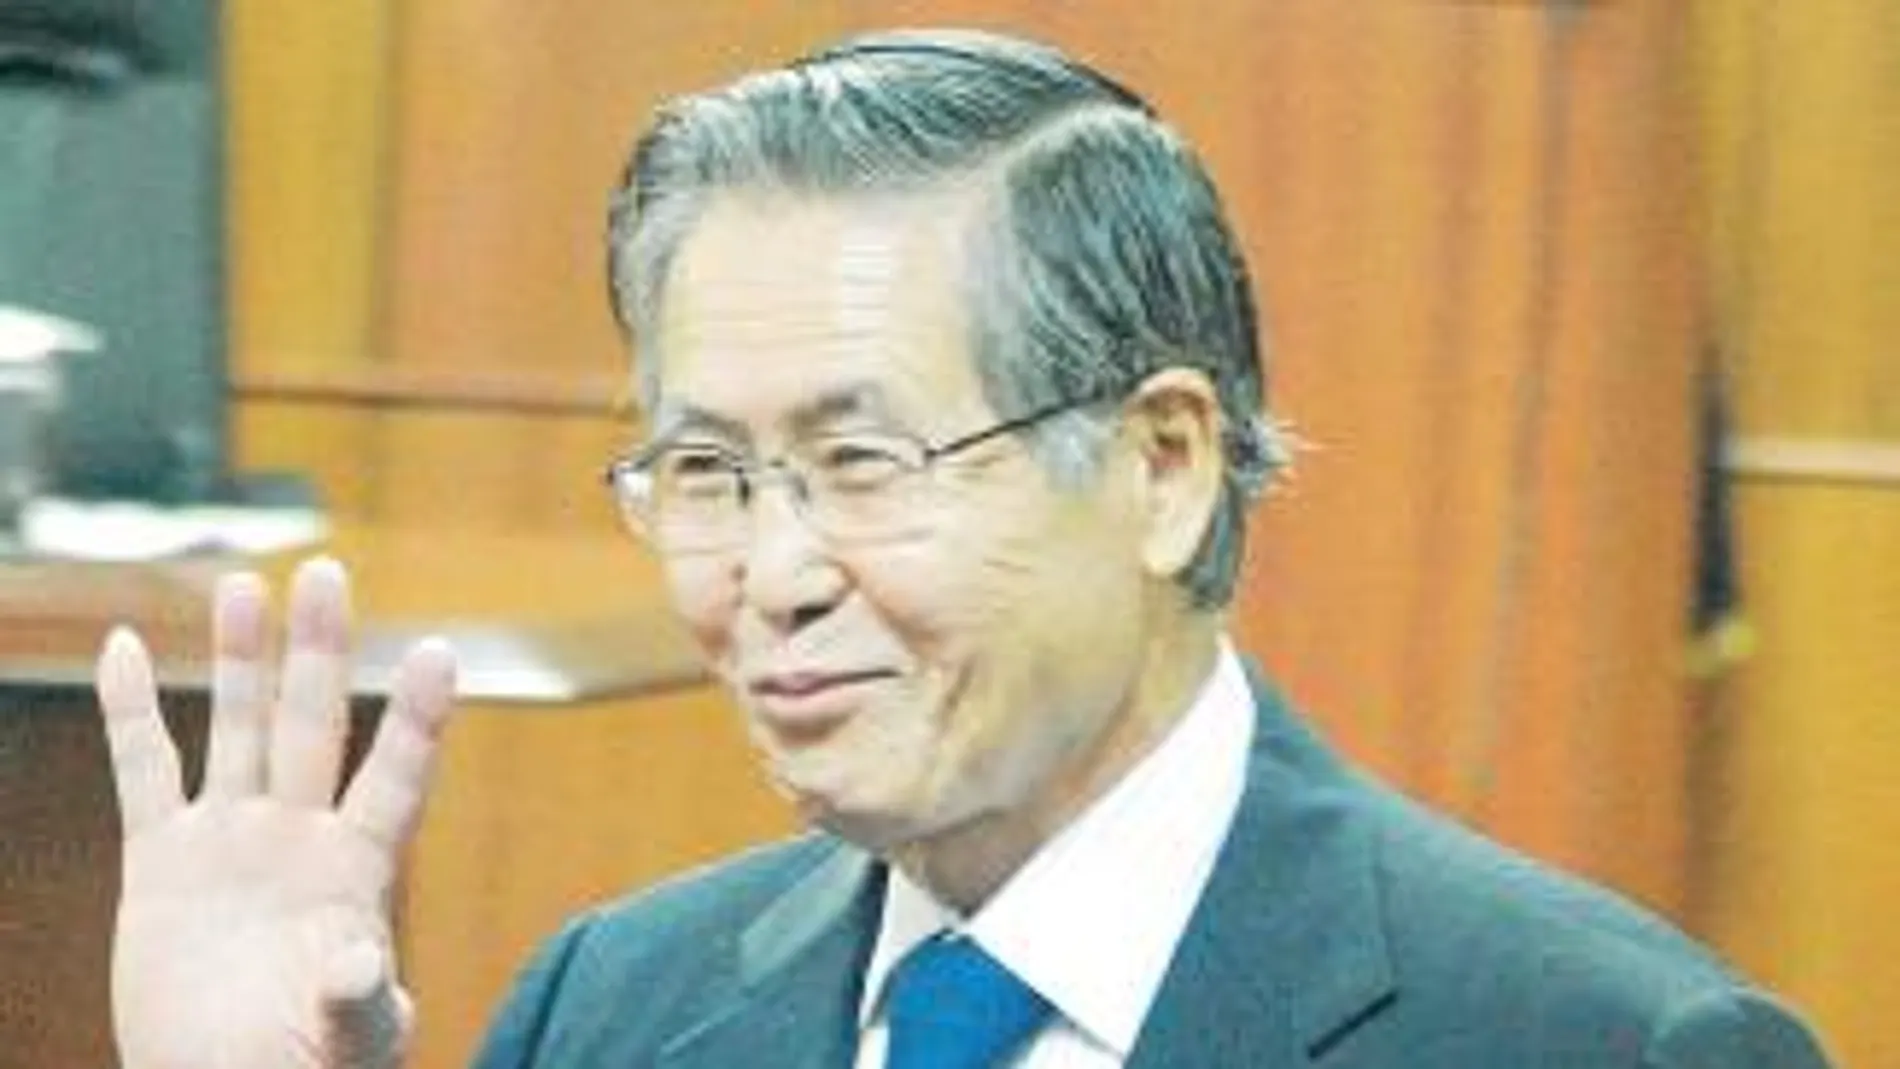 25 años de cárcel para Fujimori